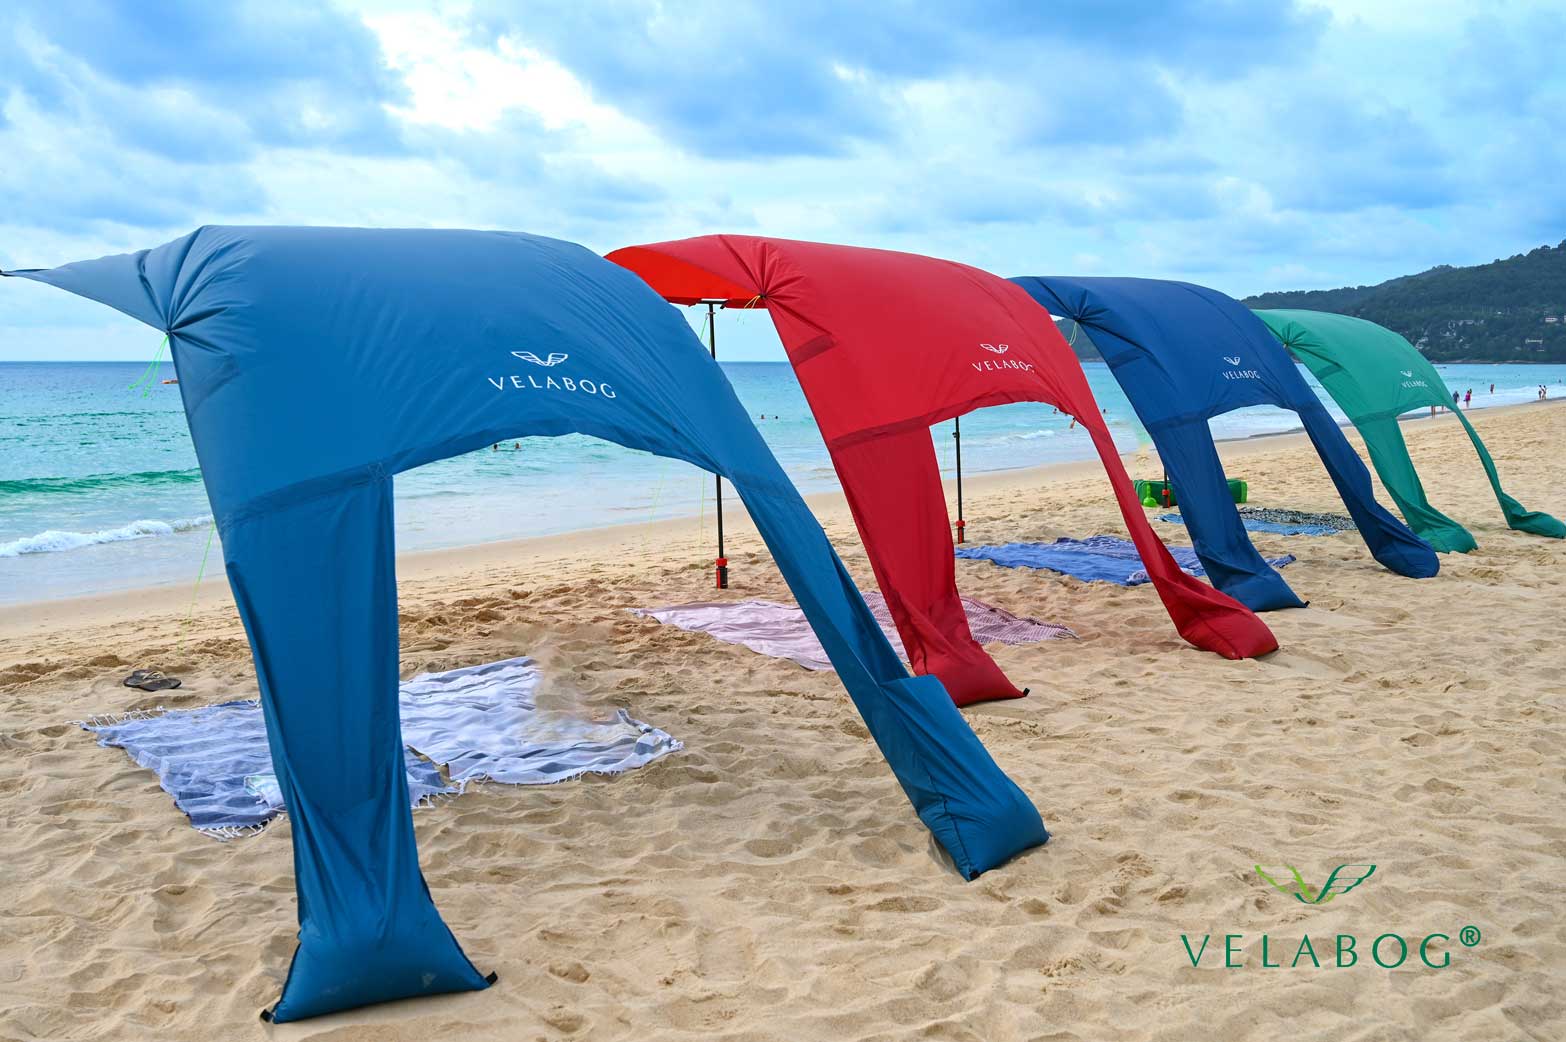 Cuatro toldos playa Velabog Breeze ofrecen refugio solar con ventilación en la playa. Mucha más sombra en comparación con sombrillas de playa. Mucho más aire en comparación con carpas de playa. Opción de montaje desde viento ligero a fuerte. Vista desde atrás.